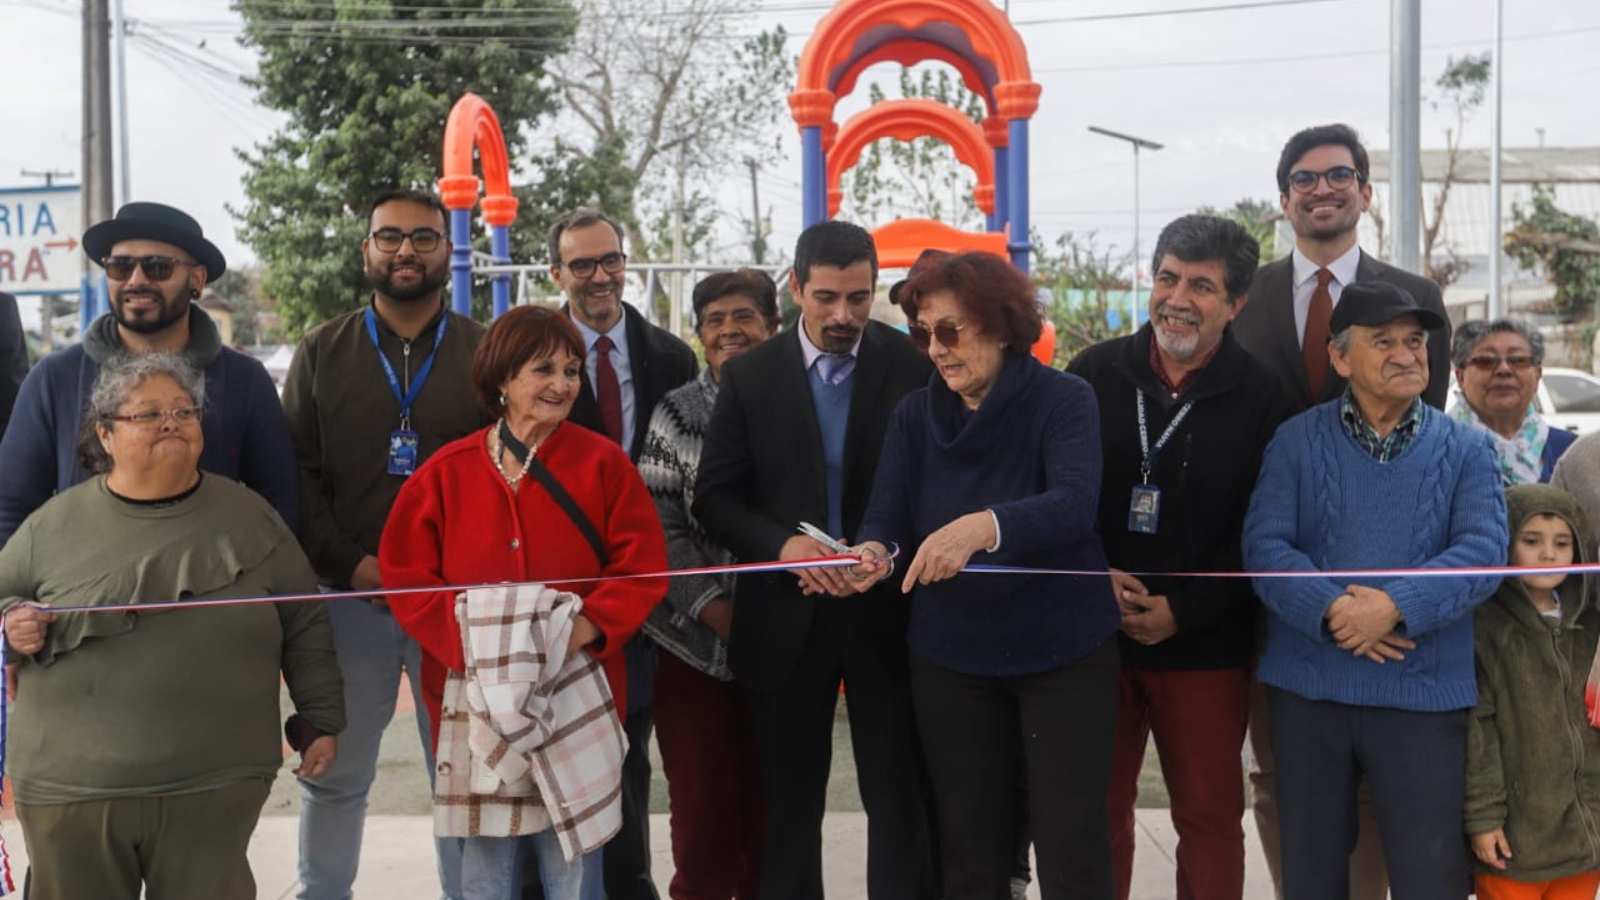 Inauguración de la Plaza Portugal en Cerro Navia: Un punto de encuentro para la comunidad